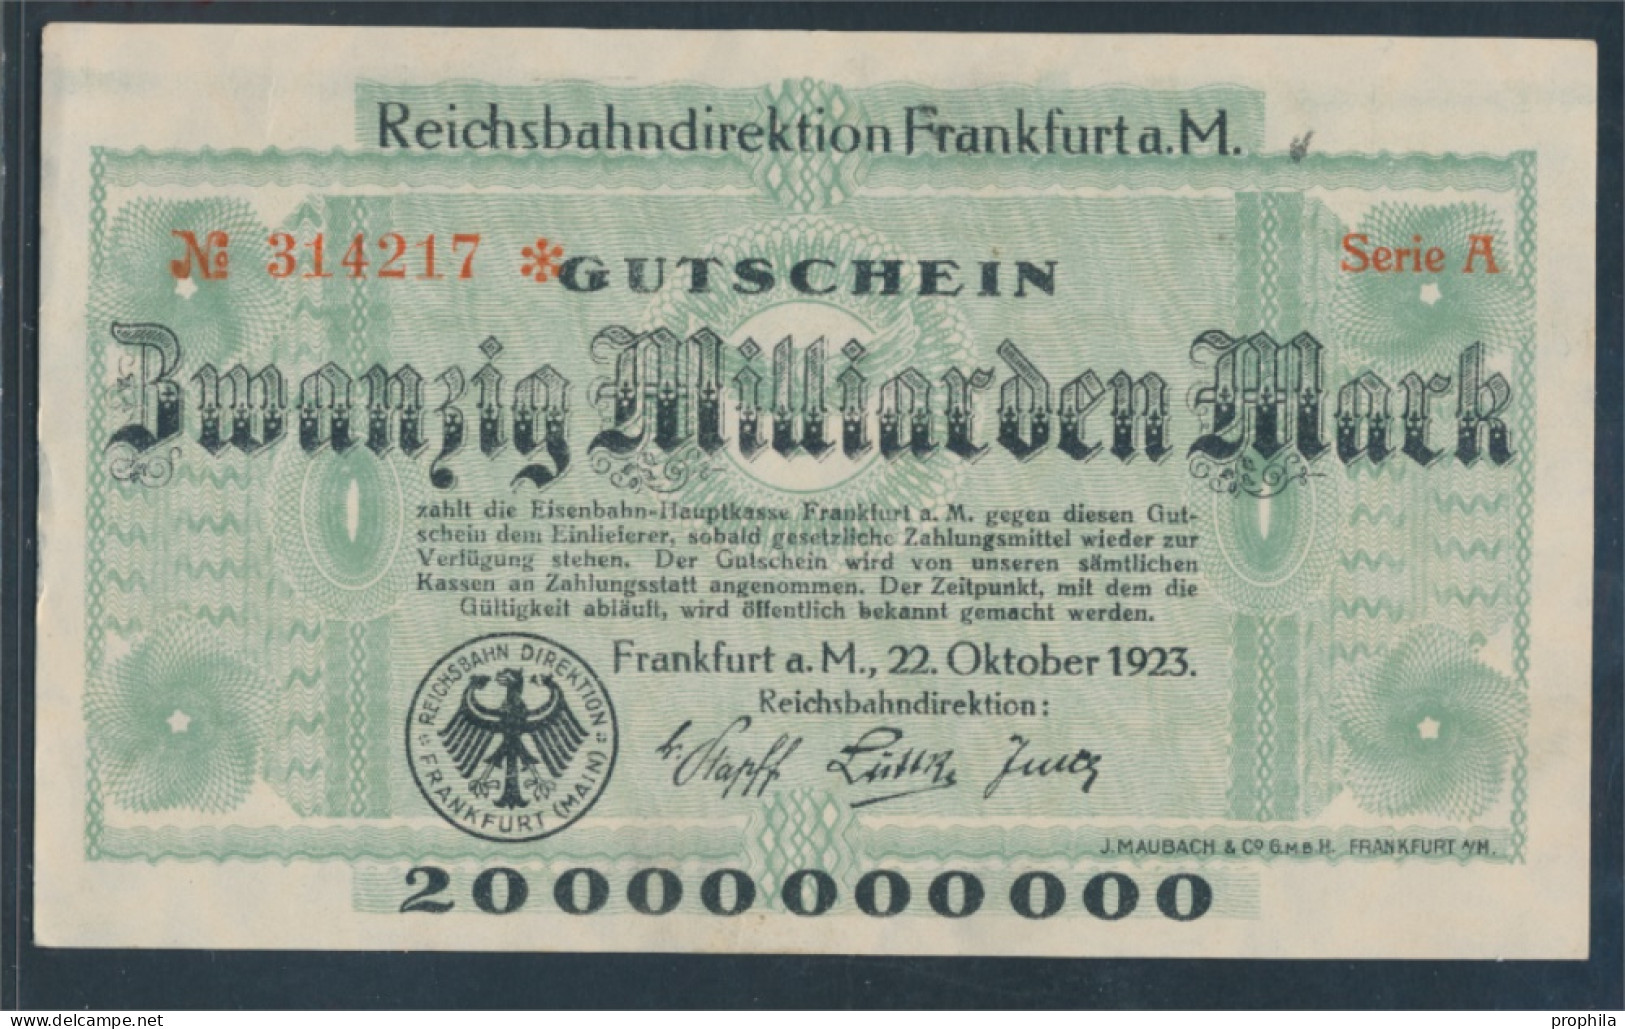 Frankfurt/Main Pick-Nr: S1222 Inflationsgeld Der Dt. Reichsbahn Frankfurt A. M. Gebraucht (III) 1923 20 Millia (10288423 - 20 Milliarden Mark